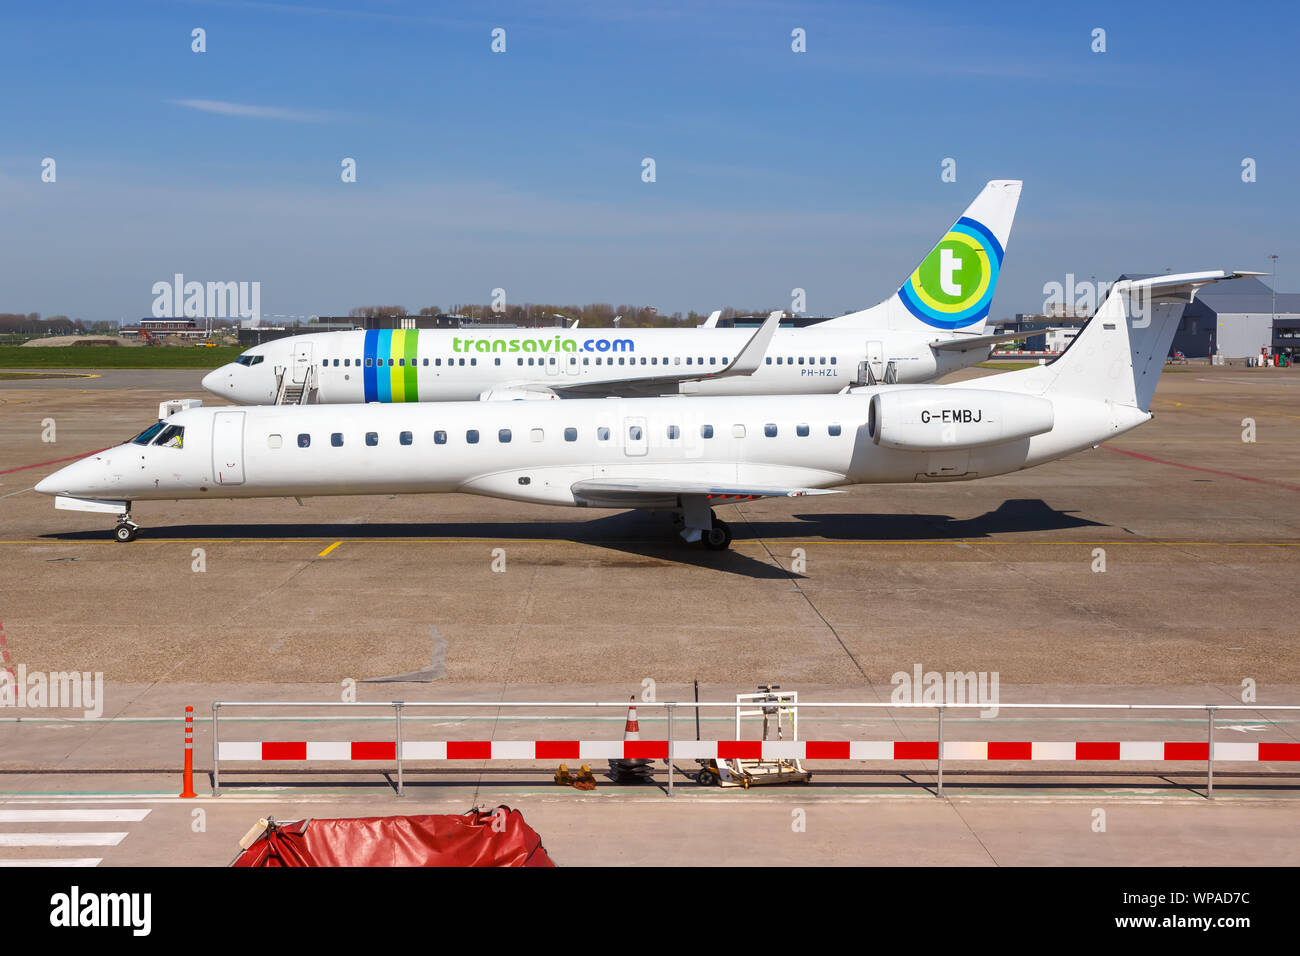 Rotterdam, Holanda - 20 de abril de 2015: BMI Regional Embraer 145 aviones en el aeropuerto de La Haya Rotterdam (RTM) en los Países Bajos. Foto de stock